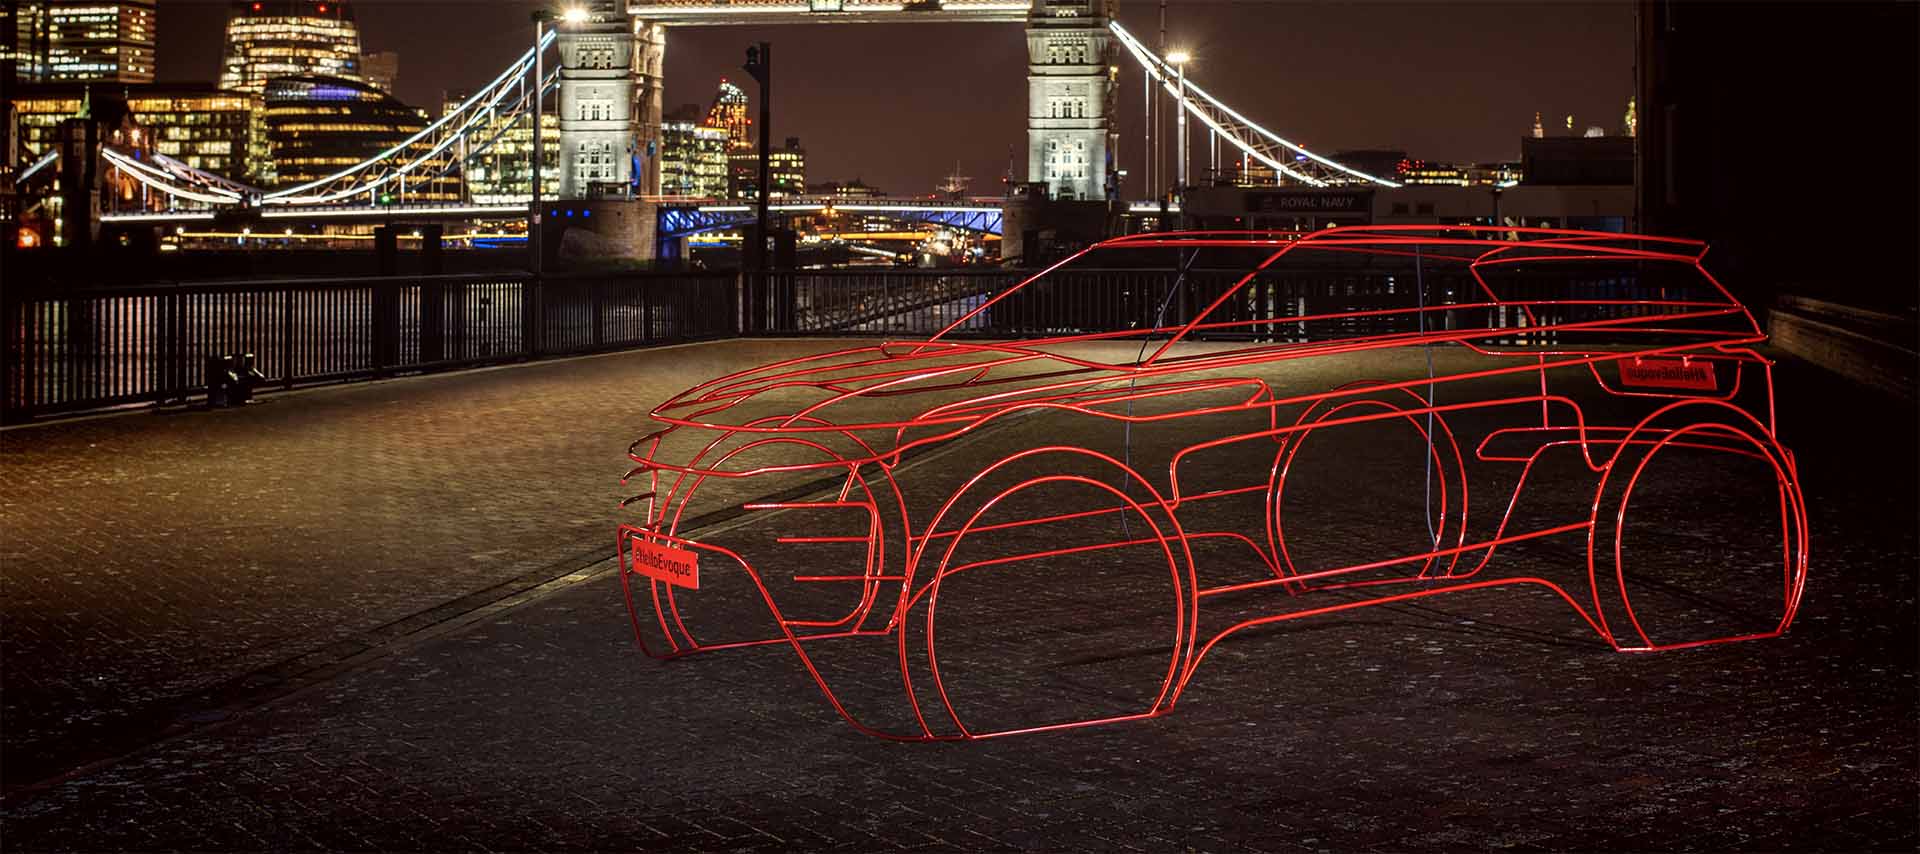 Berita, Next Gen Range Rover Evoque: Teaser Next Gen Range Rover Evoque Disebar di London, Rilis 22 November